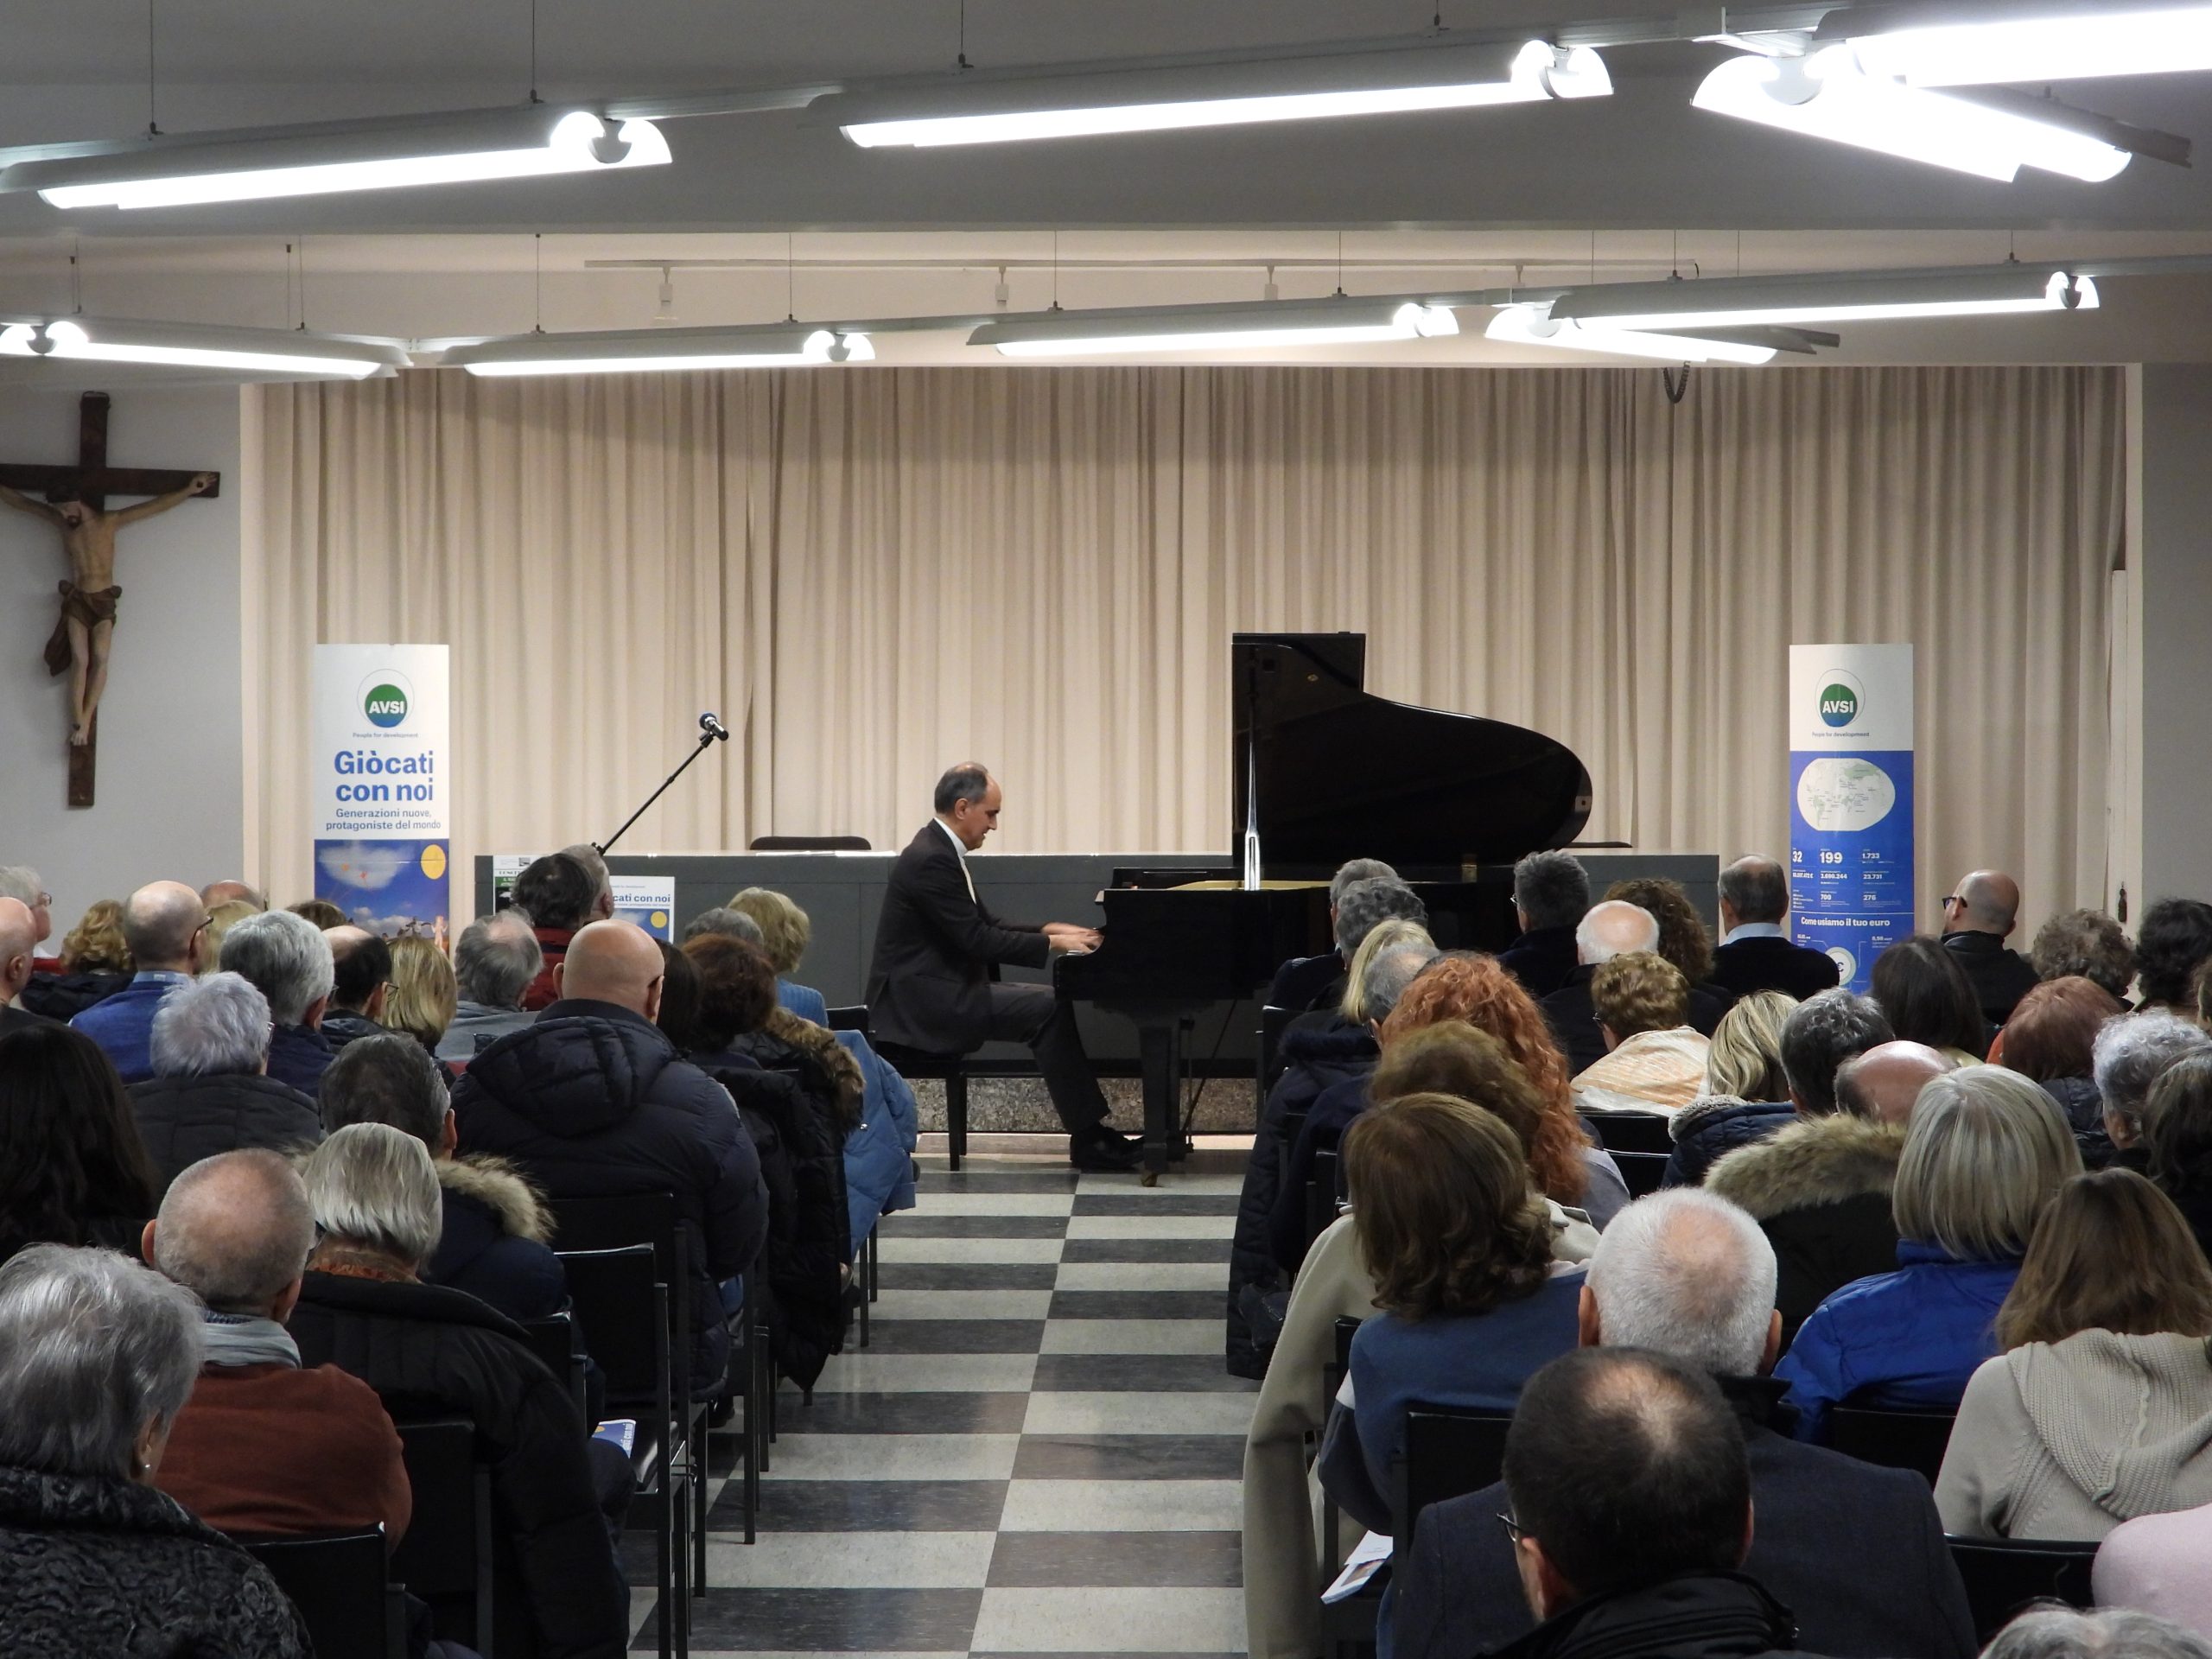 Alberto Malini, St. Blaise concert for AVSI, year 2020. Pianist don Carlo Josè Seno - Alberto Malini, concerto di S. Biagio pro AVSI, anno 2020. Pianista don Carlo Josè Seno